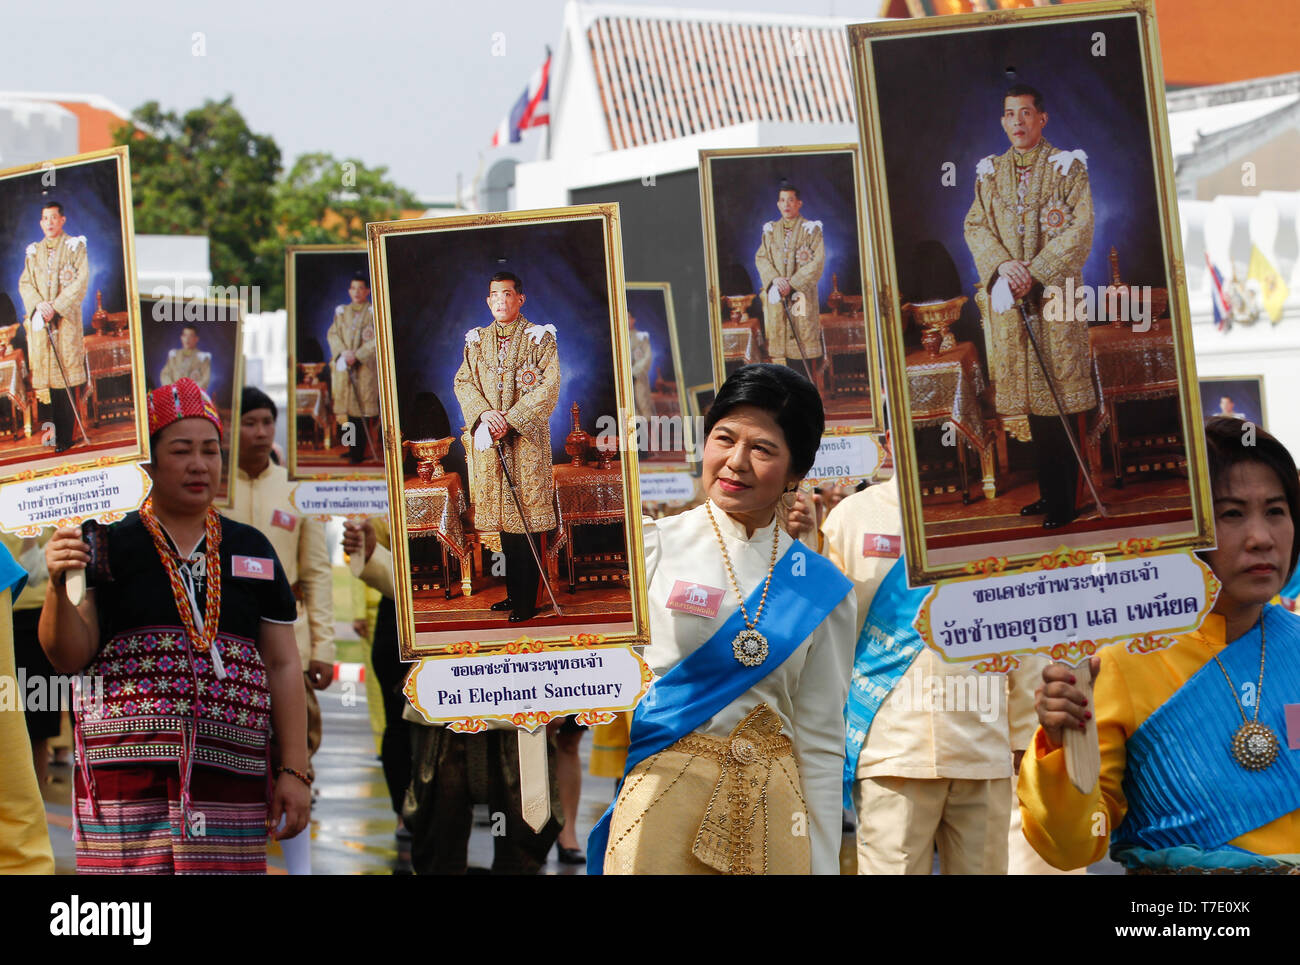 Ben wishers visto ritratti di contenimento della Thailandia del Re Rama X durante un elefante Royal Parade (non mostrato) per celebrare la Thailandia del re Maha Vajiralongkorn Bodindradebayavarangkun incoronazione a Bangkok. Foto Stock